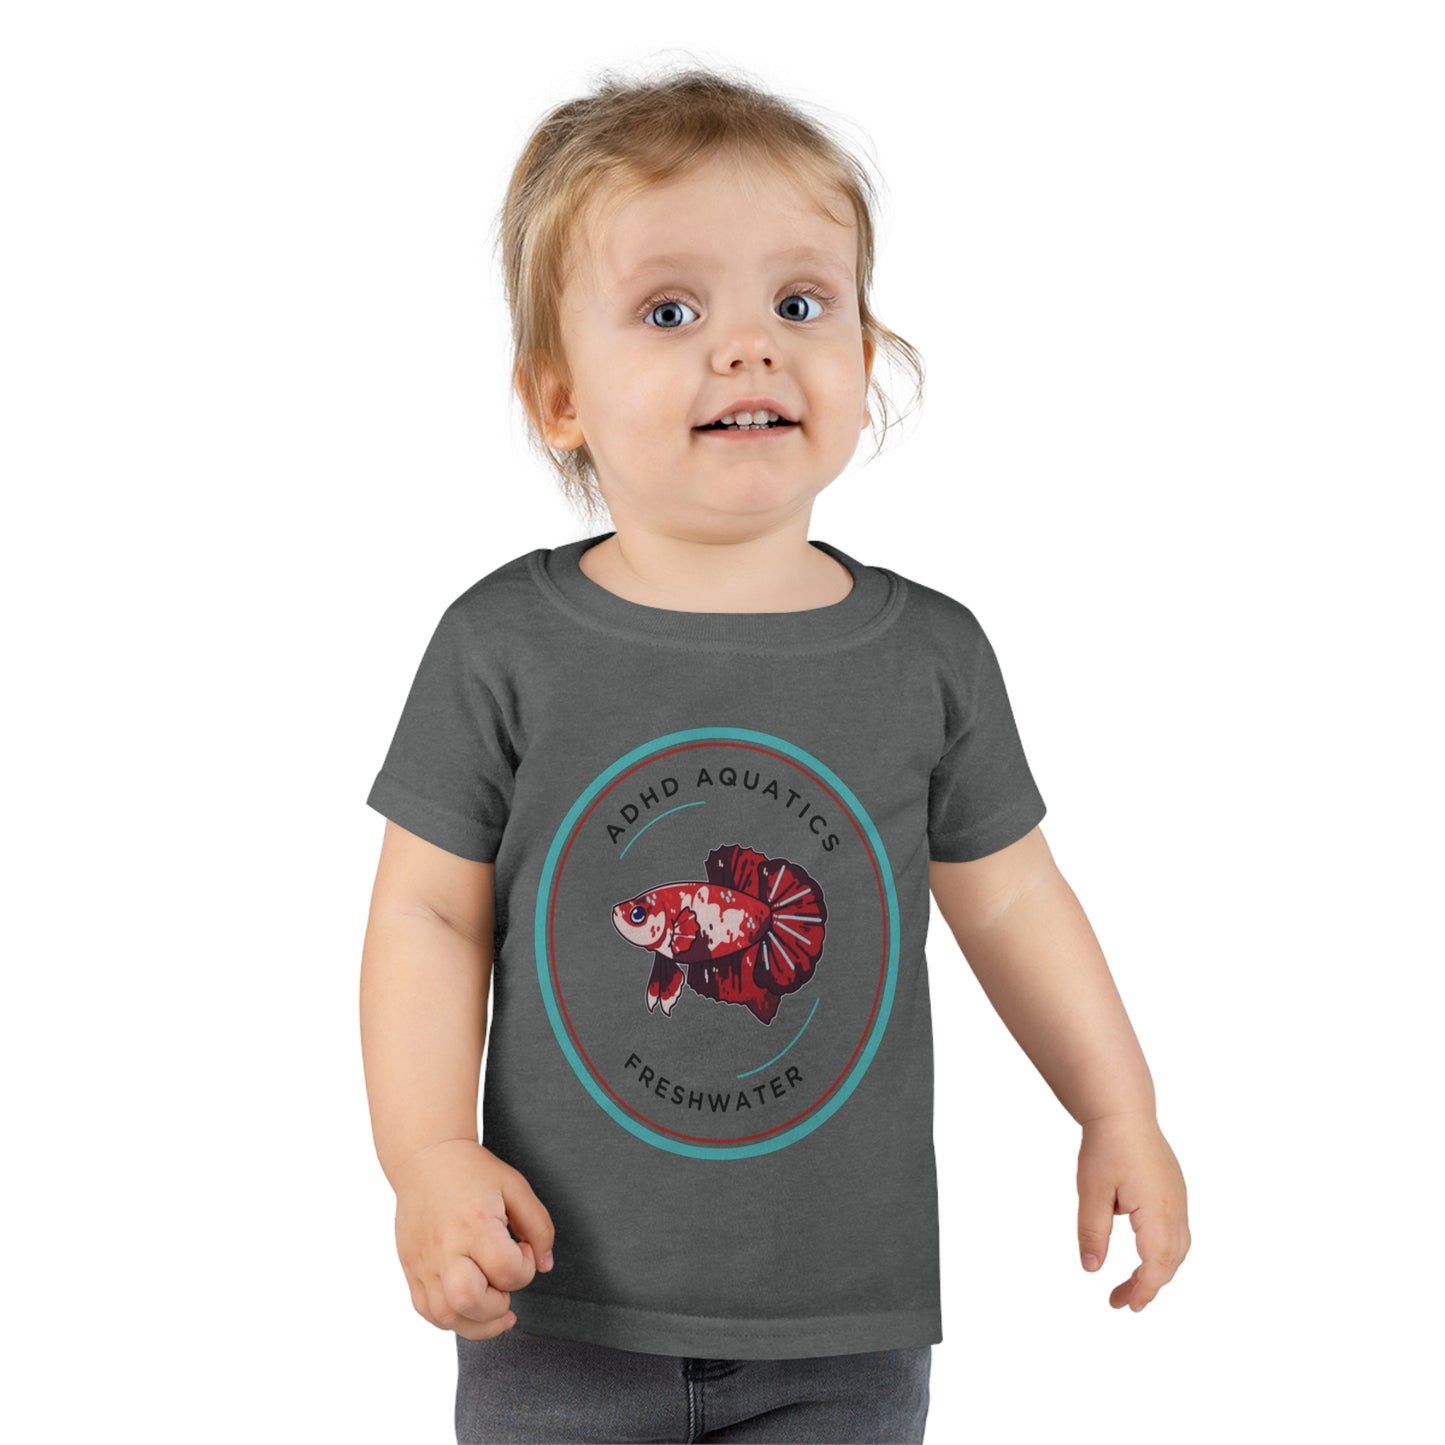 ADHD Aquatics Toddler T-shirt